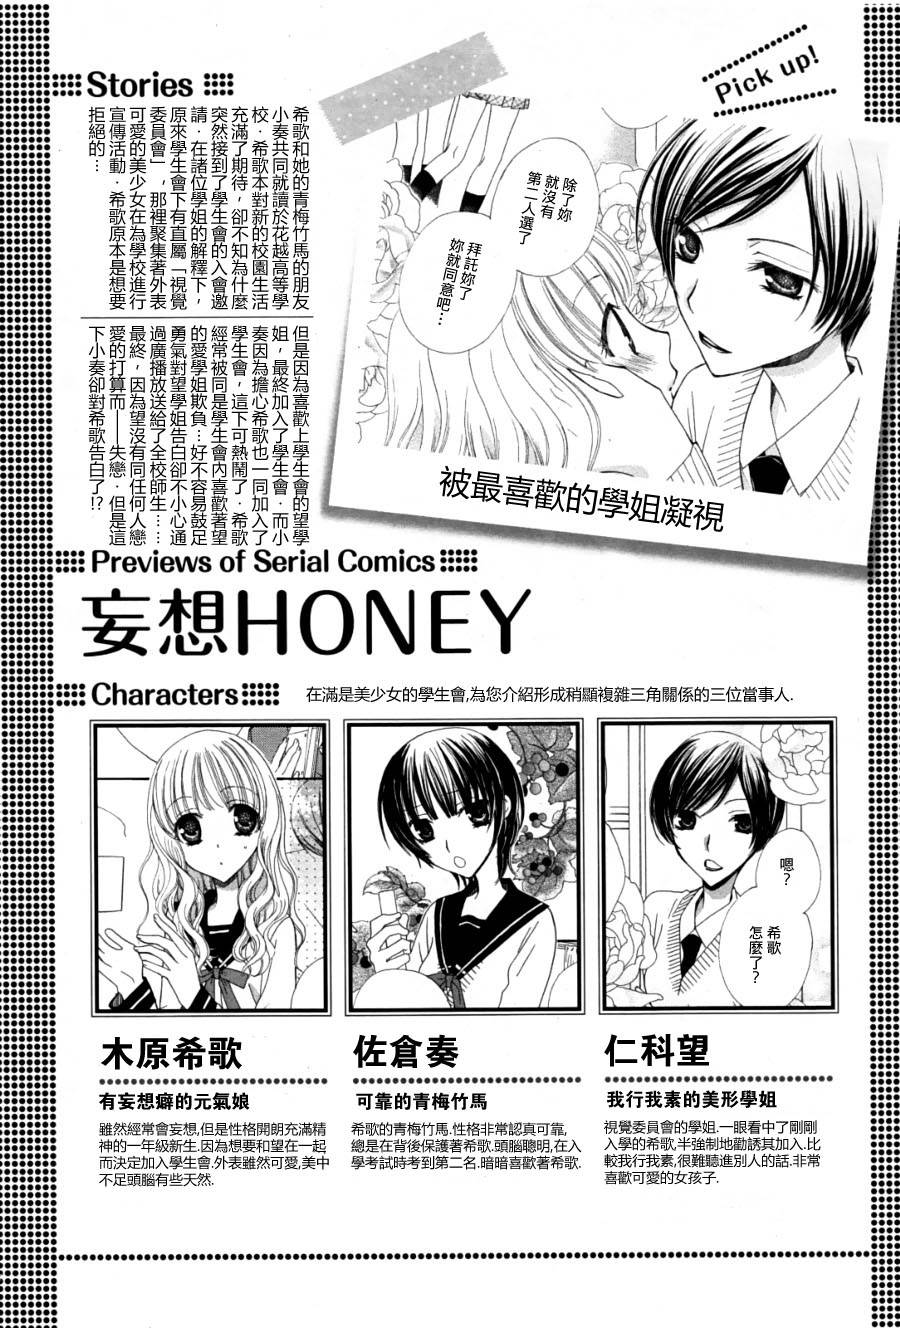 妄想honey 最終話 漫畫線上看 動漫戲說 Acgn Cc